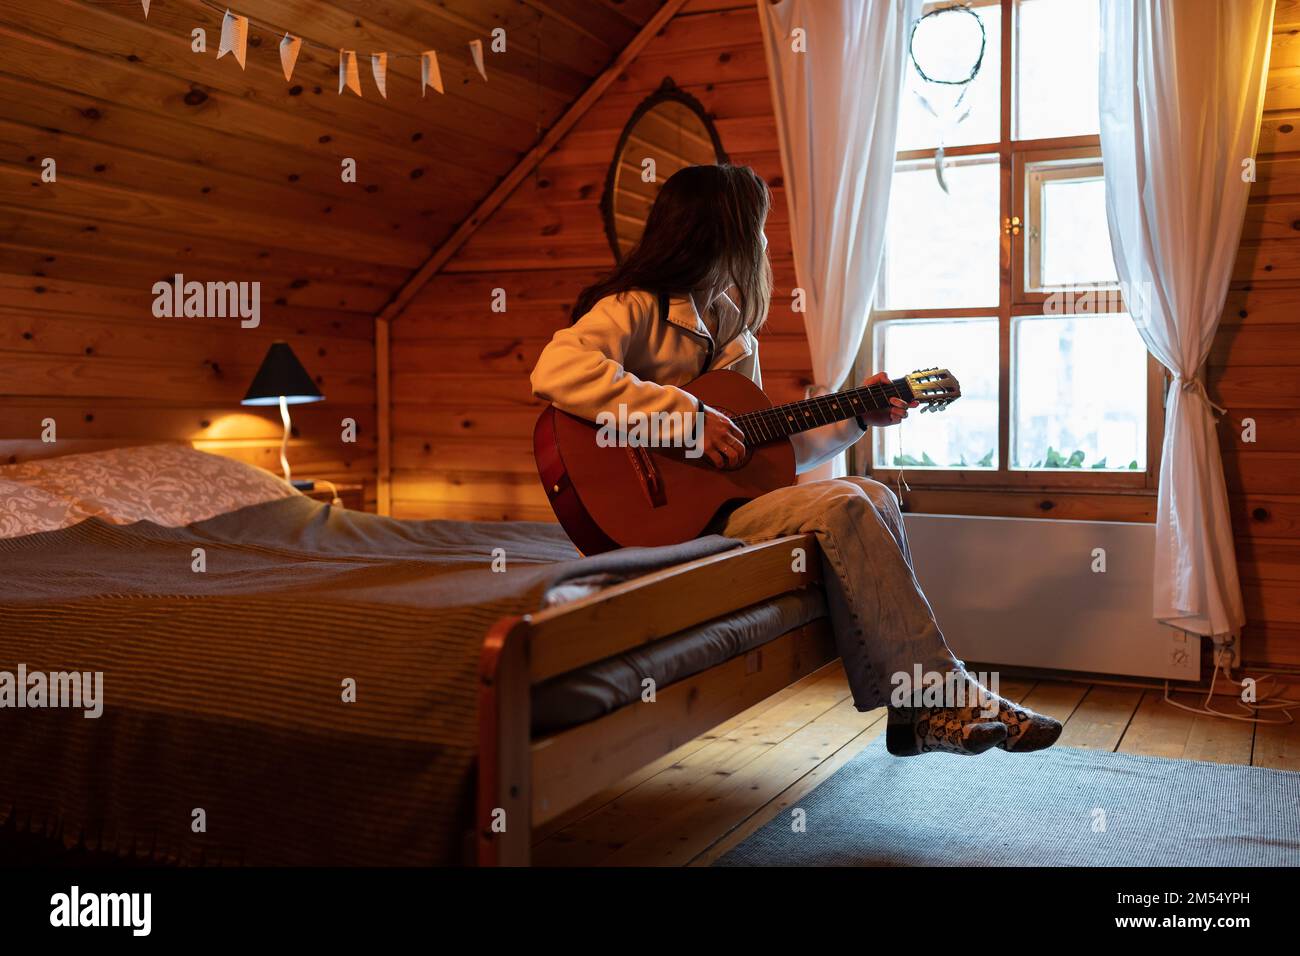 Donna solitaria melancholica seduta sul letto con chitarra in mani e guarda fuori finestra in accogliente casa di legno Foto Stock